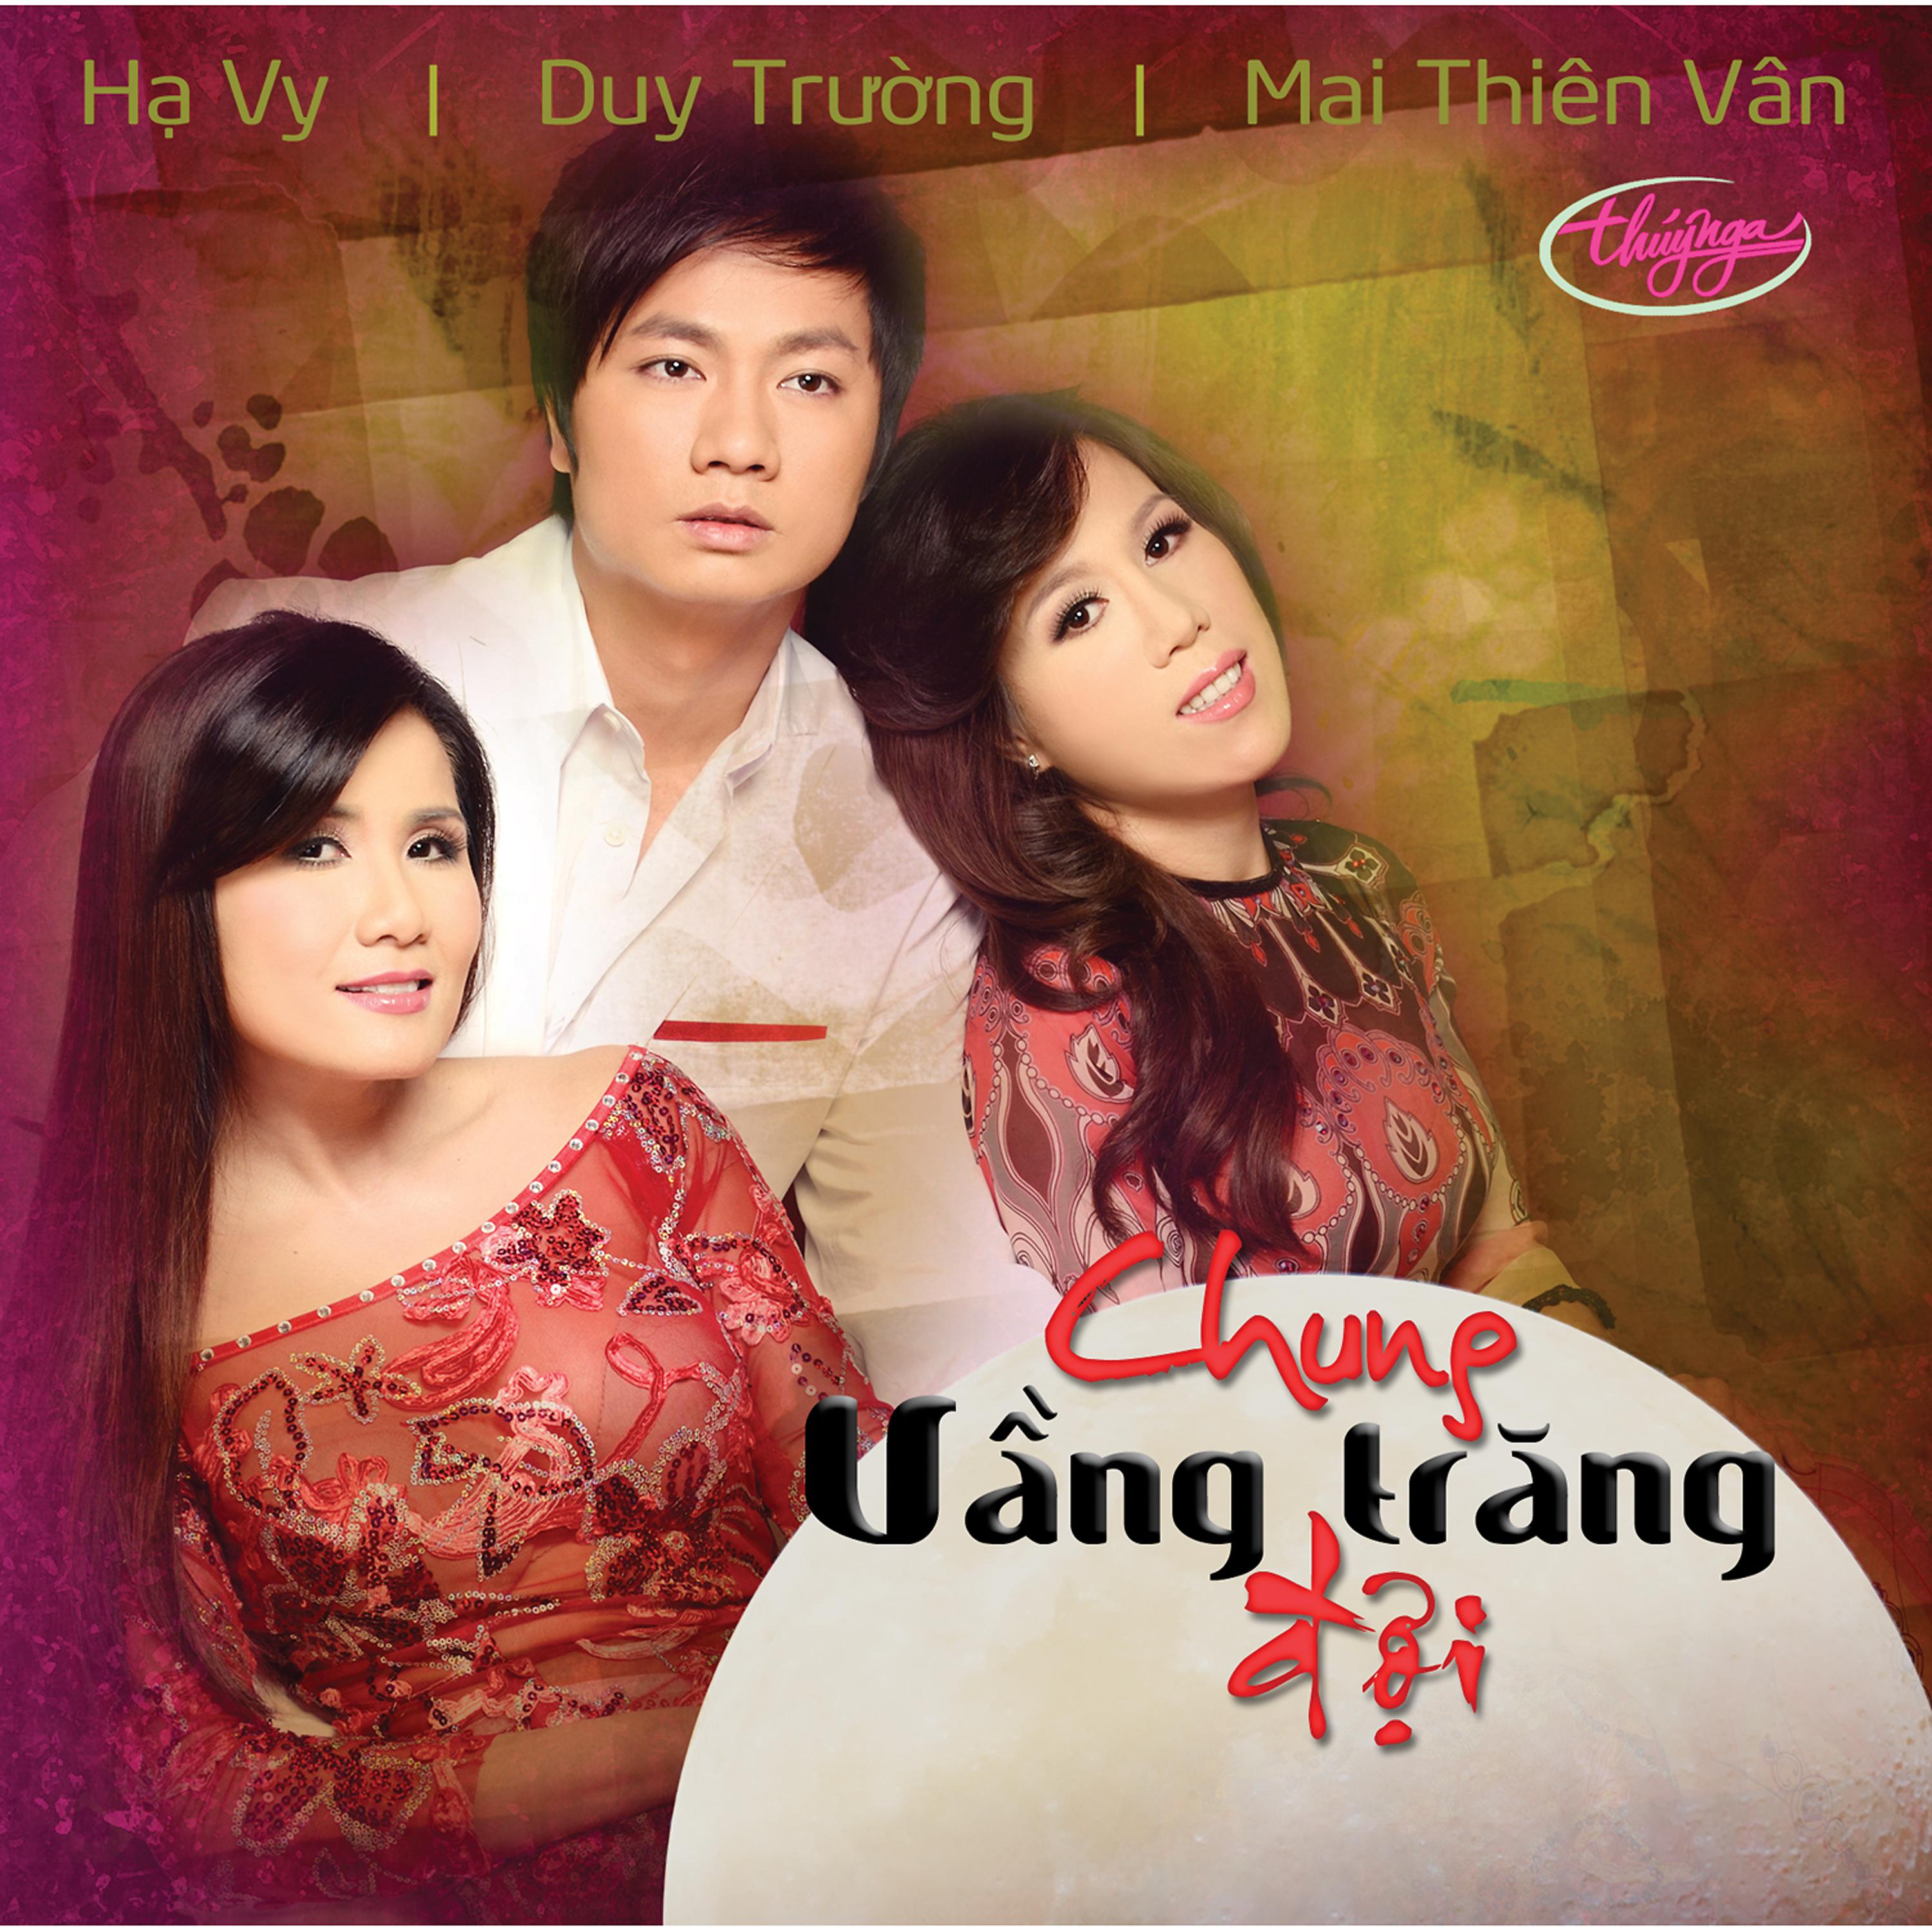 Постер альбома Chung Vầng Trăng Đợi